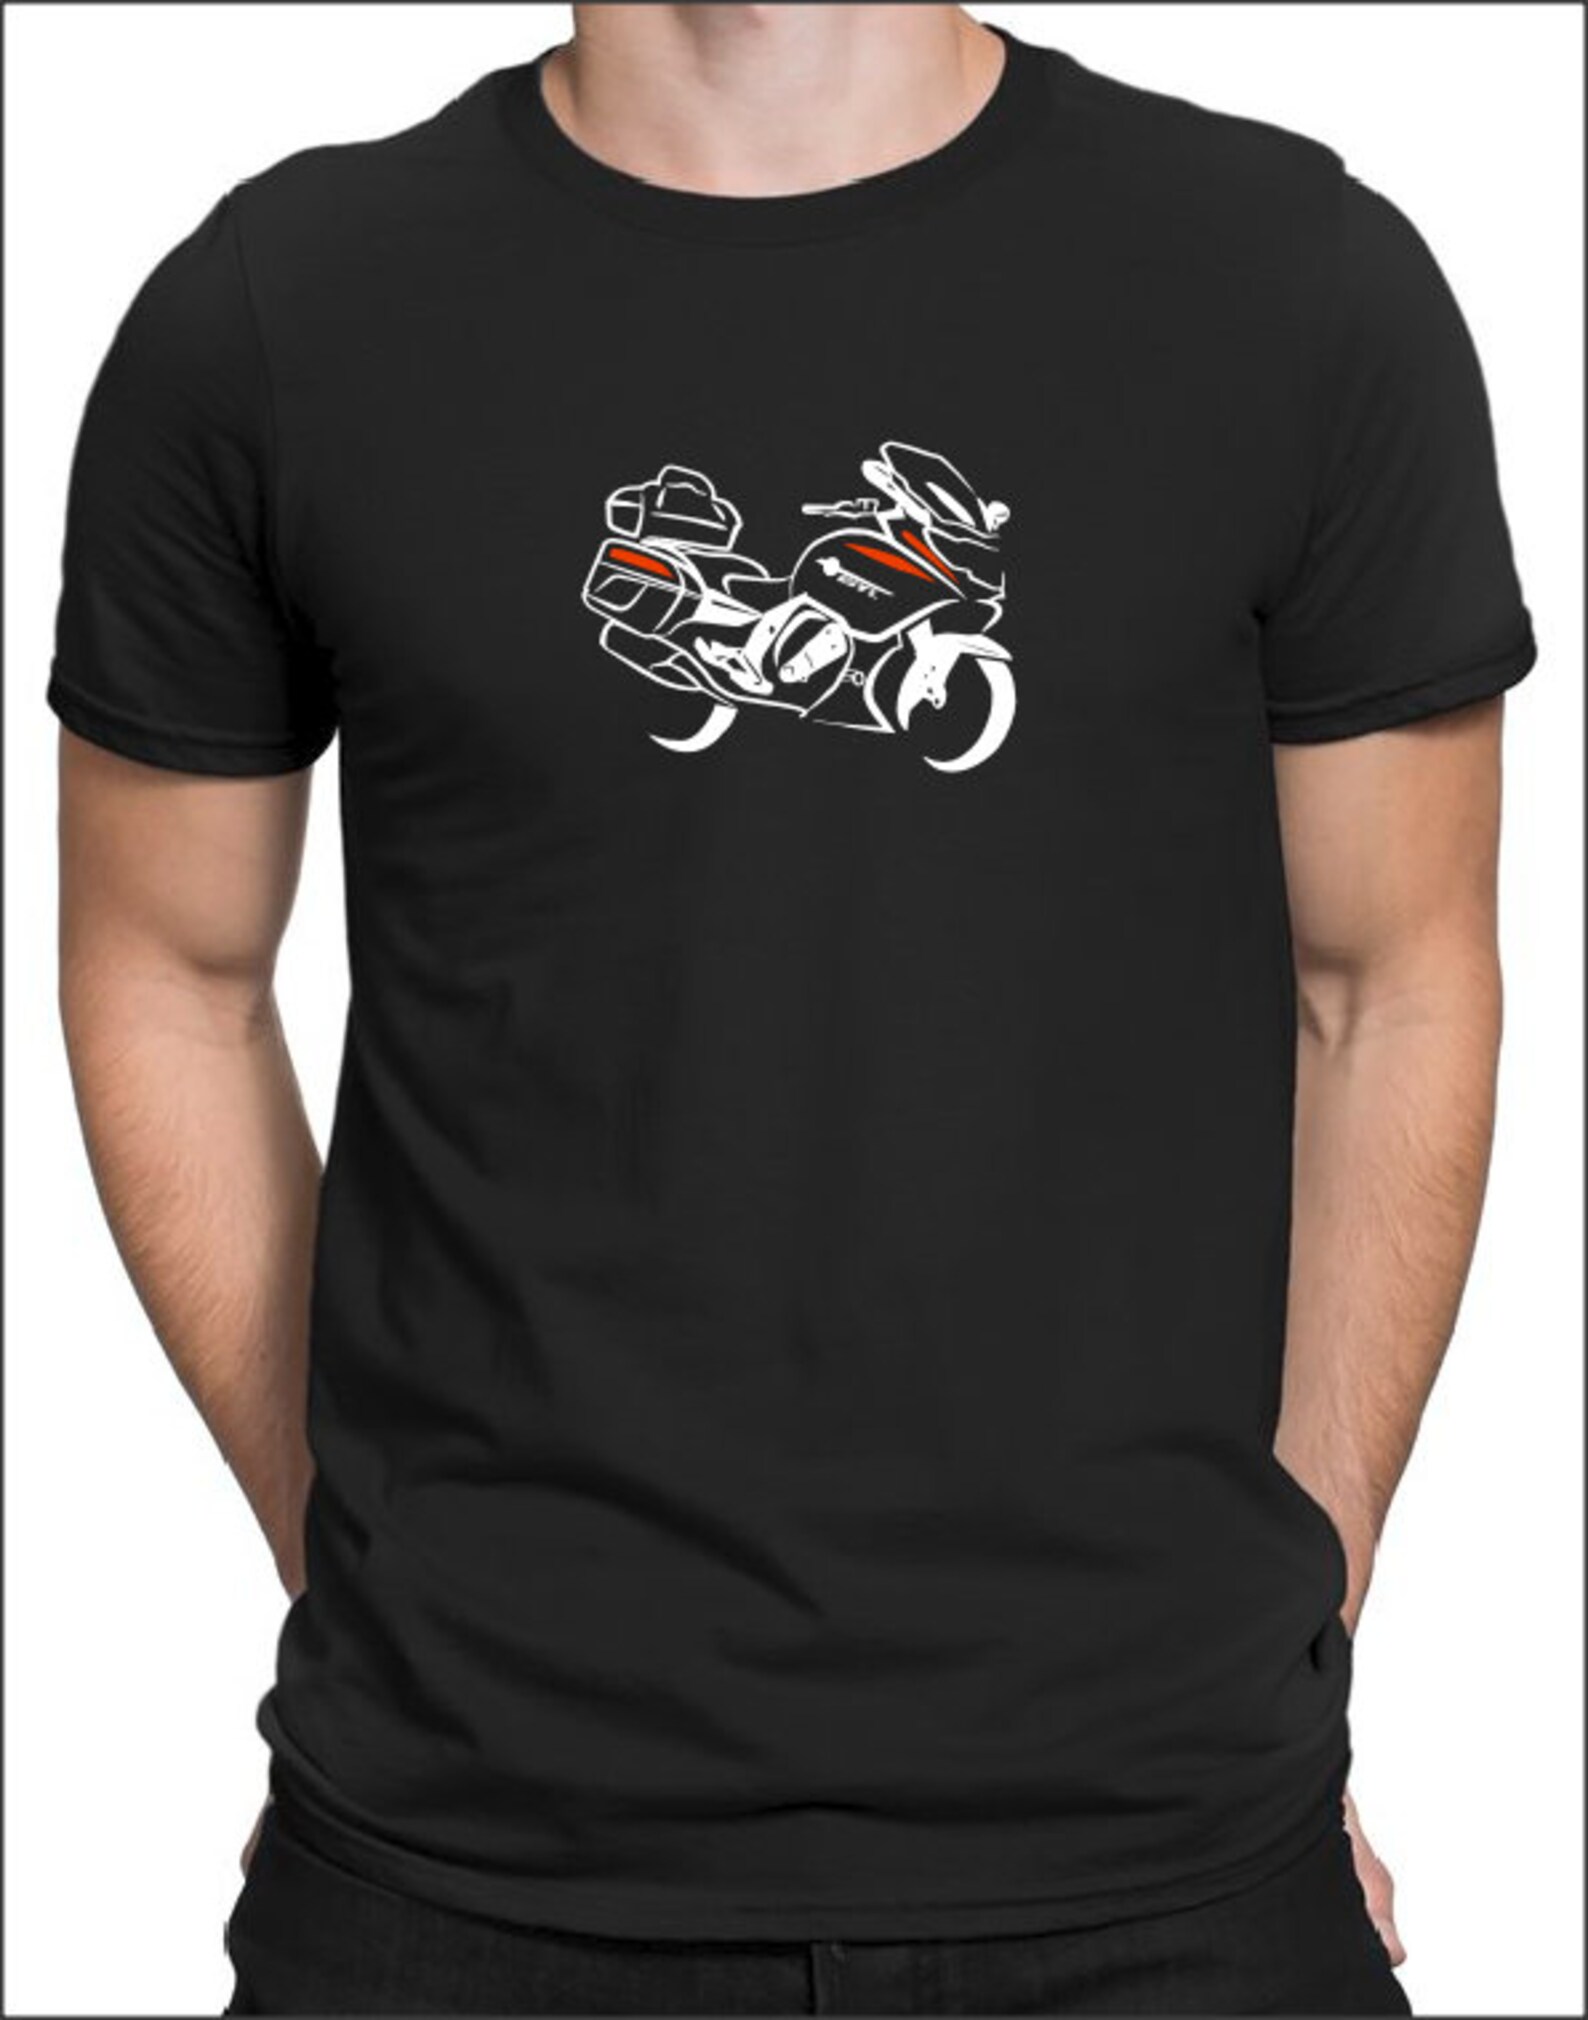 For BMW K1600GTL T-shirt Motorrad K 1600 GTL Fans Motorcycle - Etsy UK